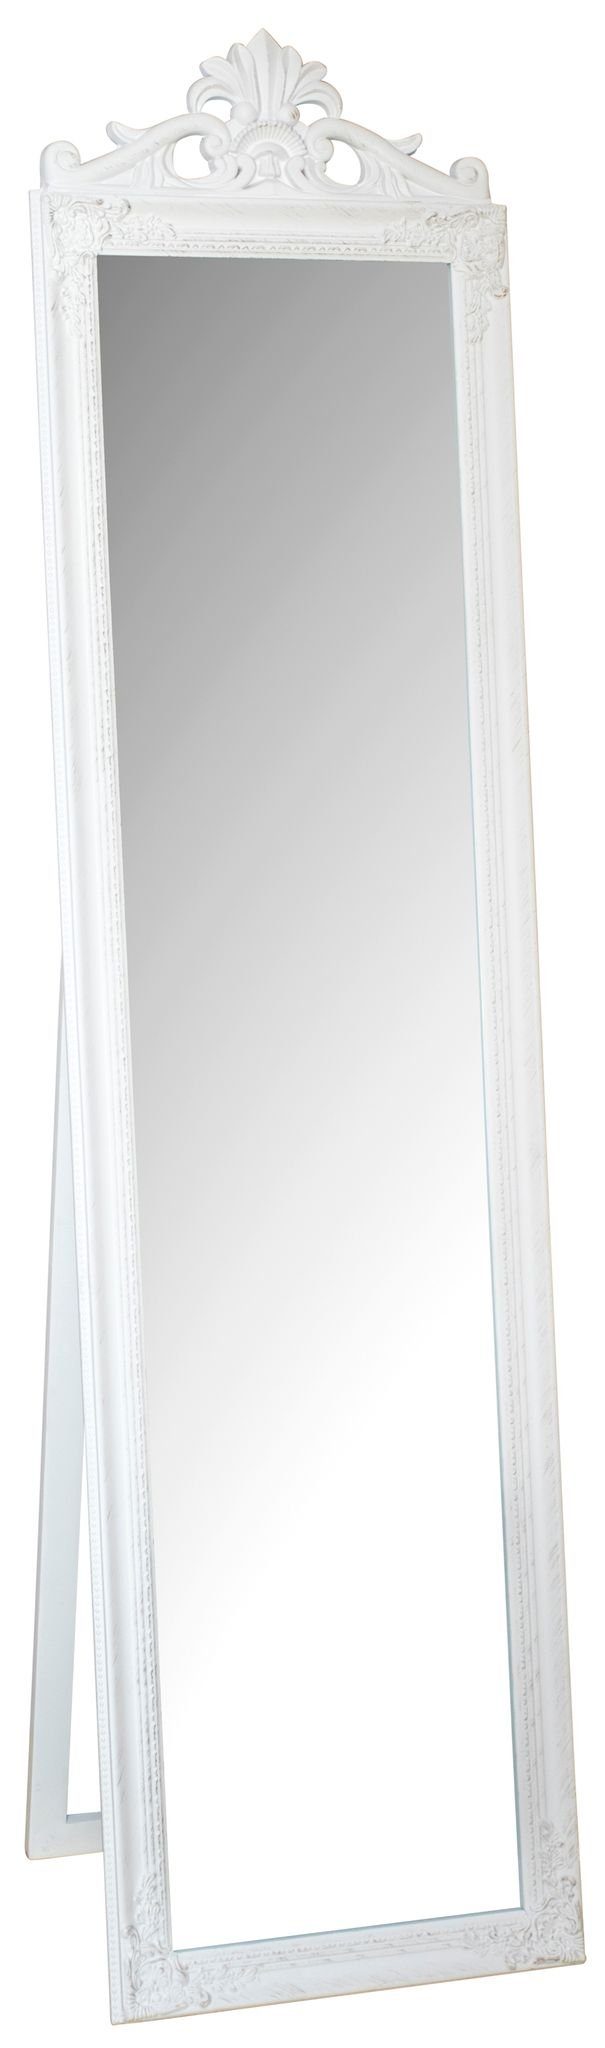 elbmöbel Standspiegel Standspiegel weiß groß, Spiegel: Standspiegel 180x45x5 cm weiß Barock